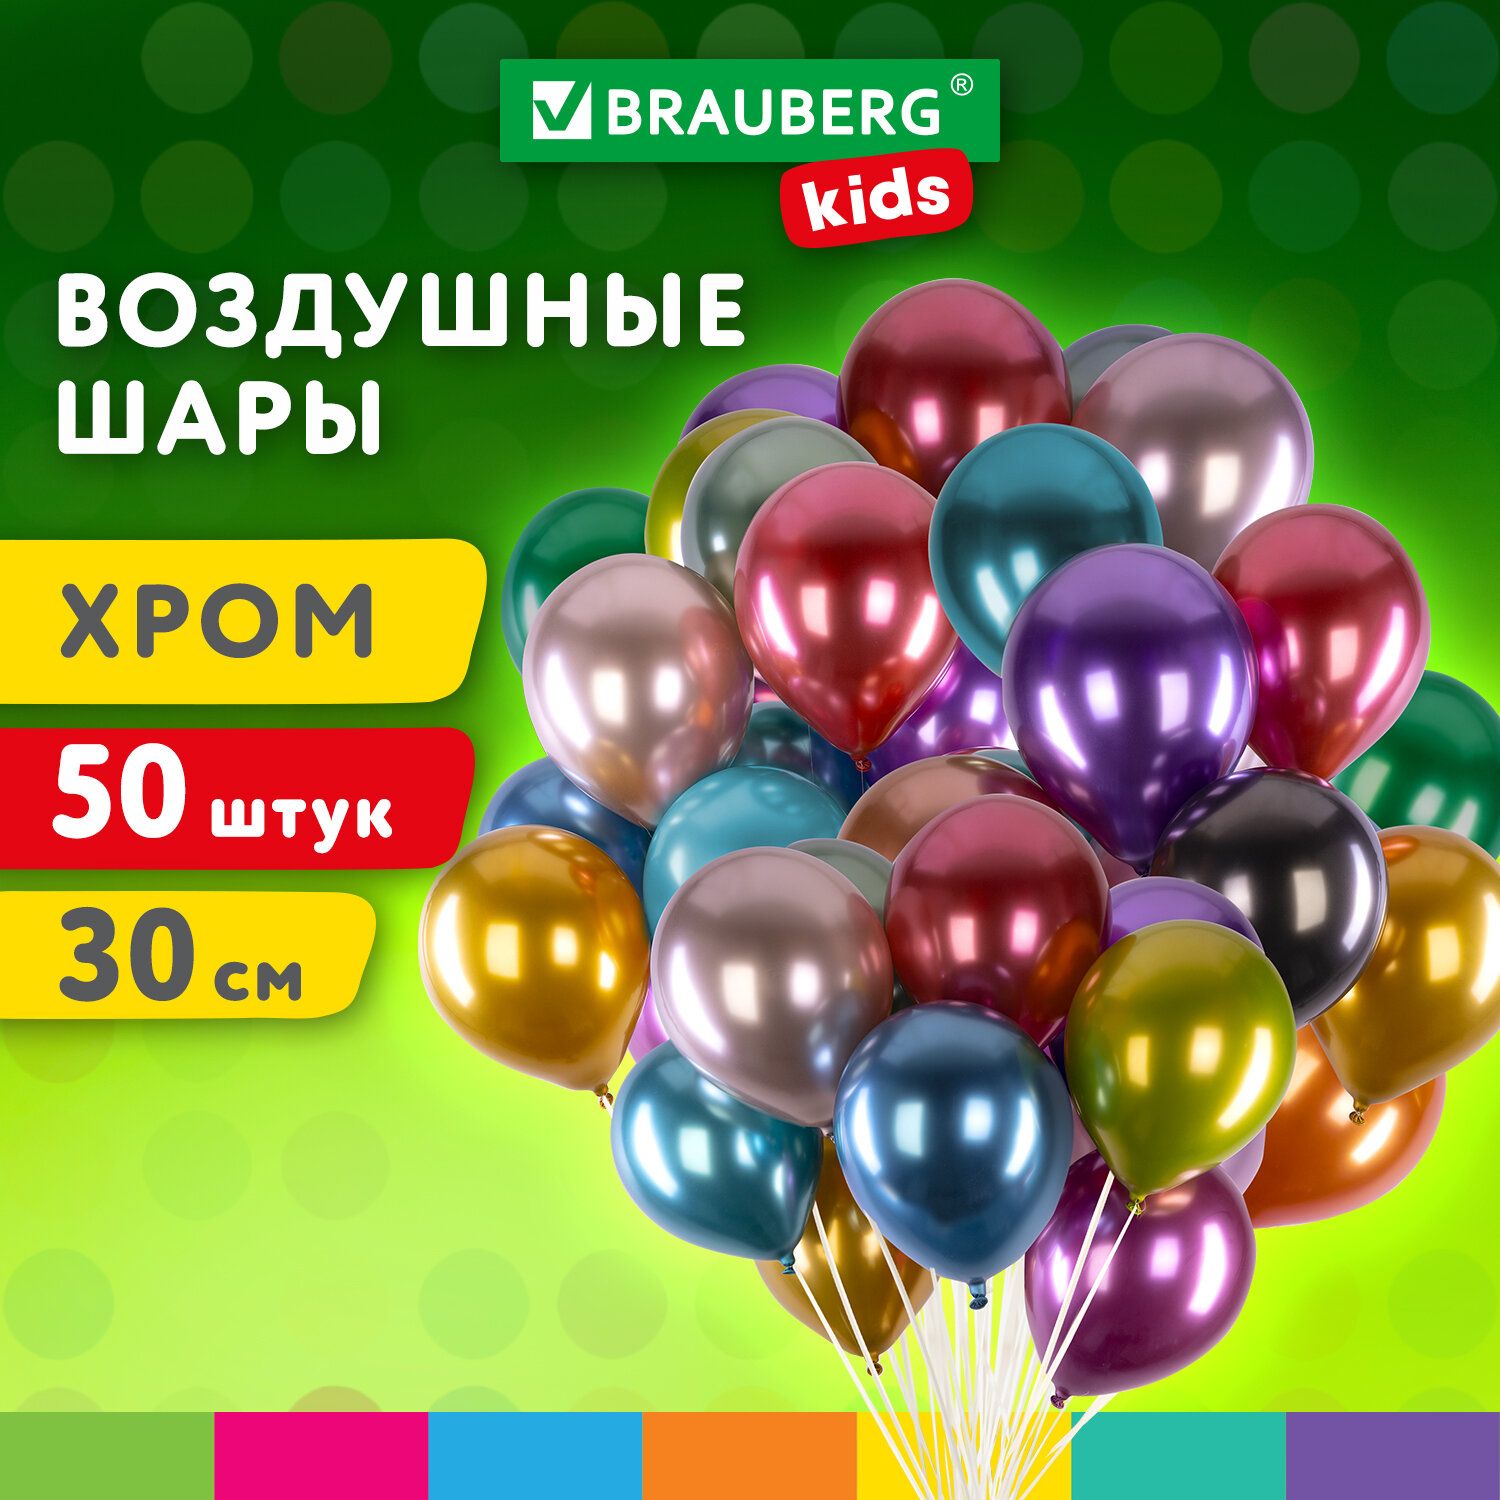 Шарики воздушные Brauberg Kids 591884 набор на день рождения, для фотозоны, 30 см, 50 штук воздушные шары для фотозоны